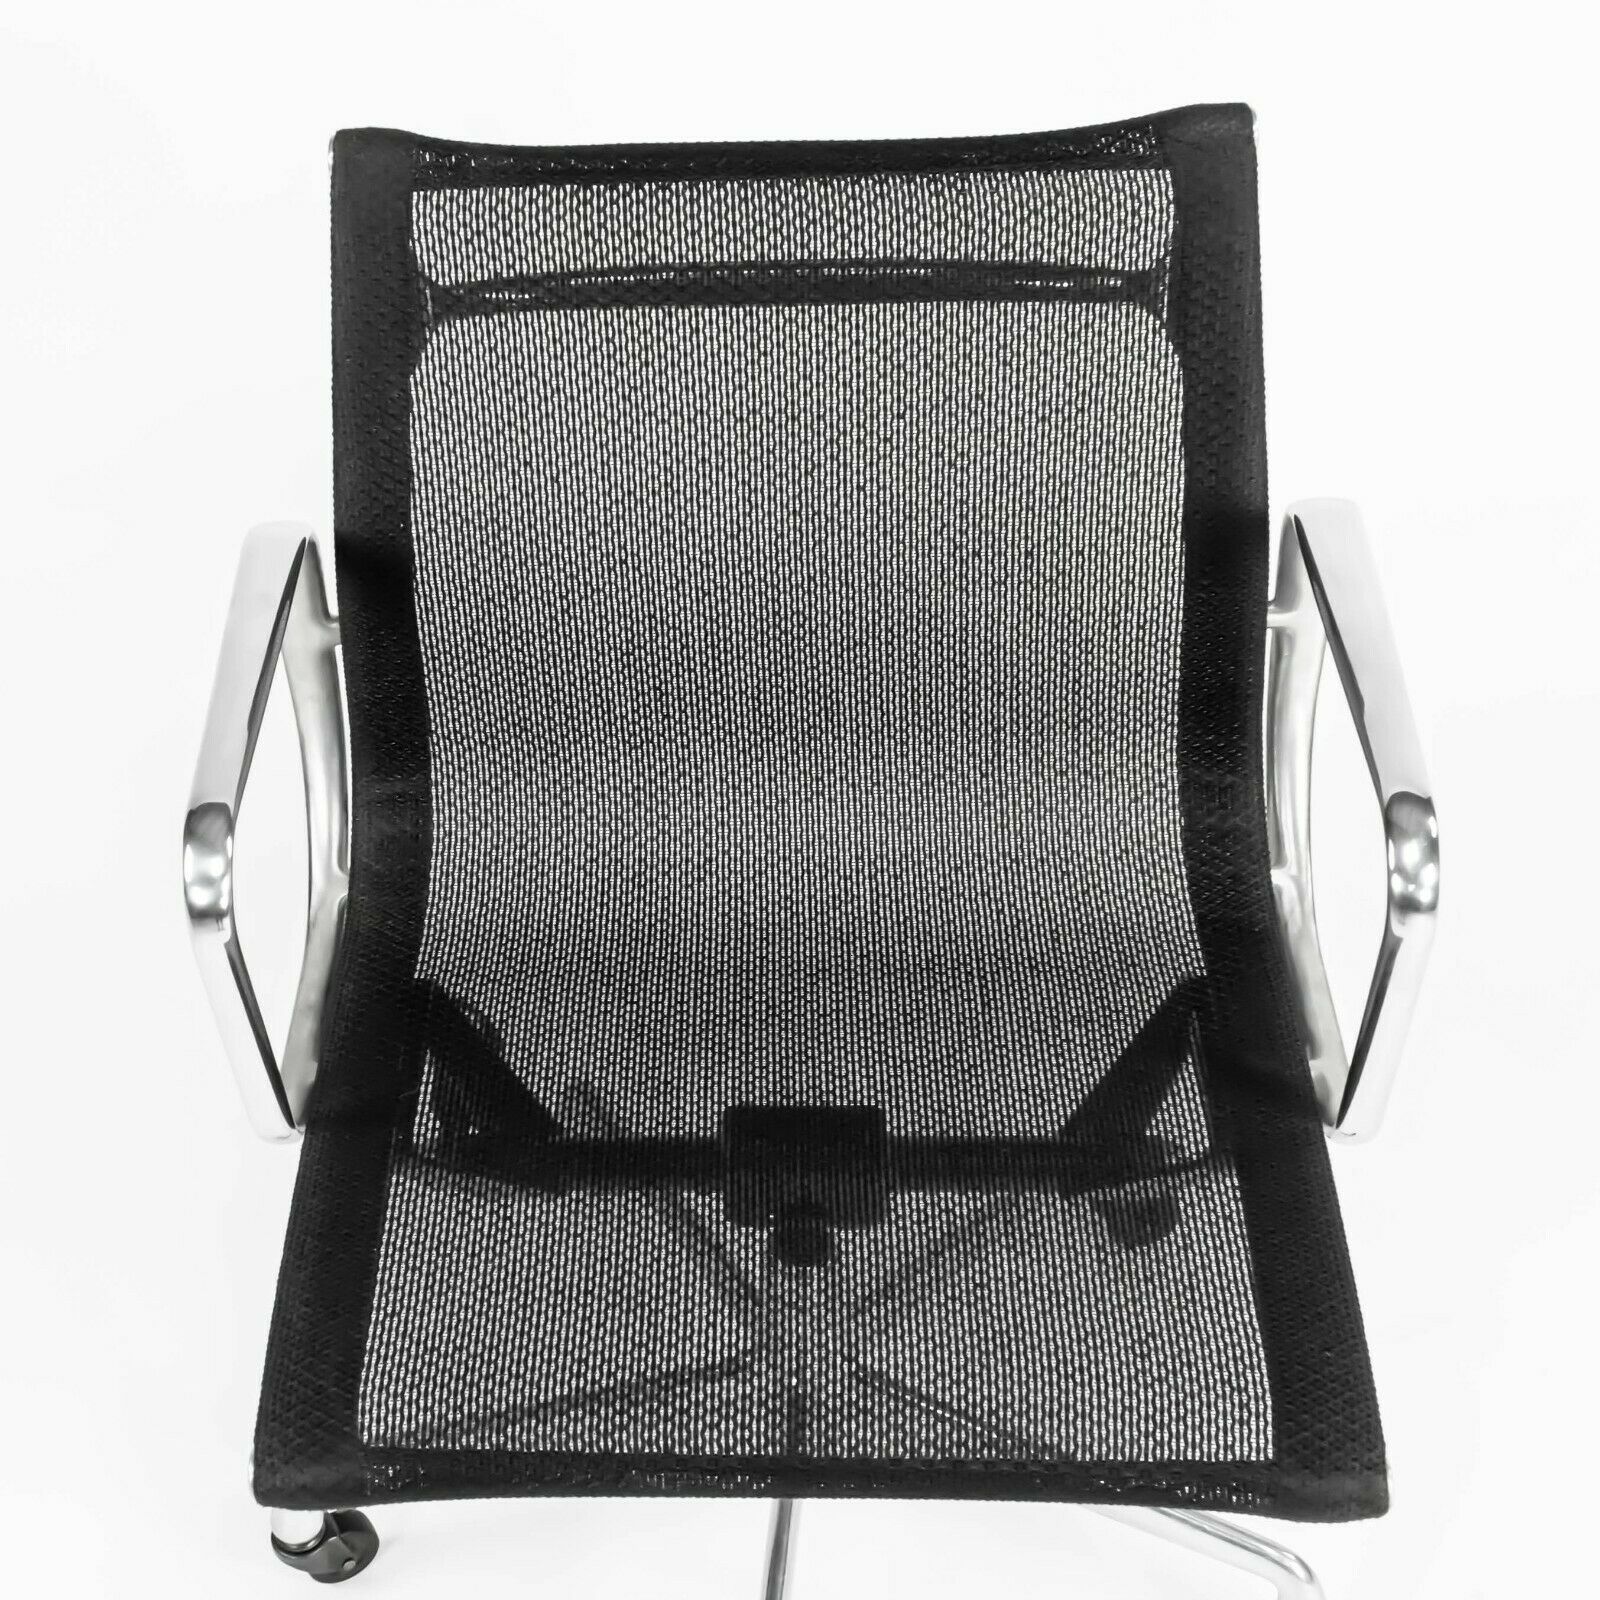 Eames Aluminum Management Chair